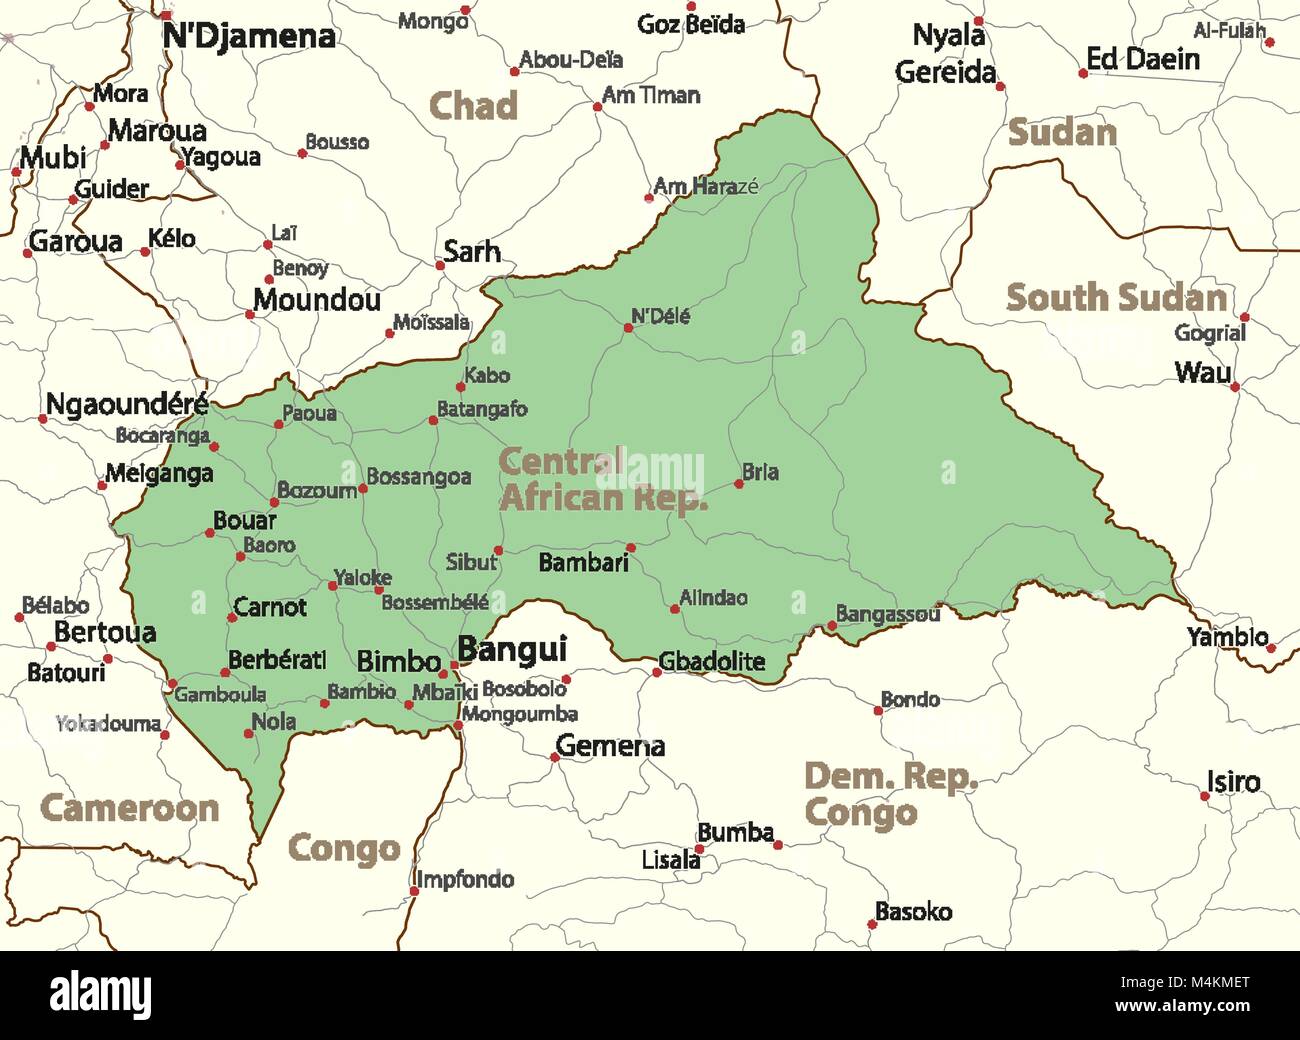 Karte von Zentralafrikanische Rep. zeigt die Ländergrenzen, städtischen Gebieten, Ortsnamen und Straßen. Beschriftungen in Englisch, wo dies möglich ist. Projektion: Mercator. Stock Vektor